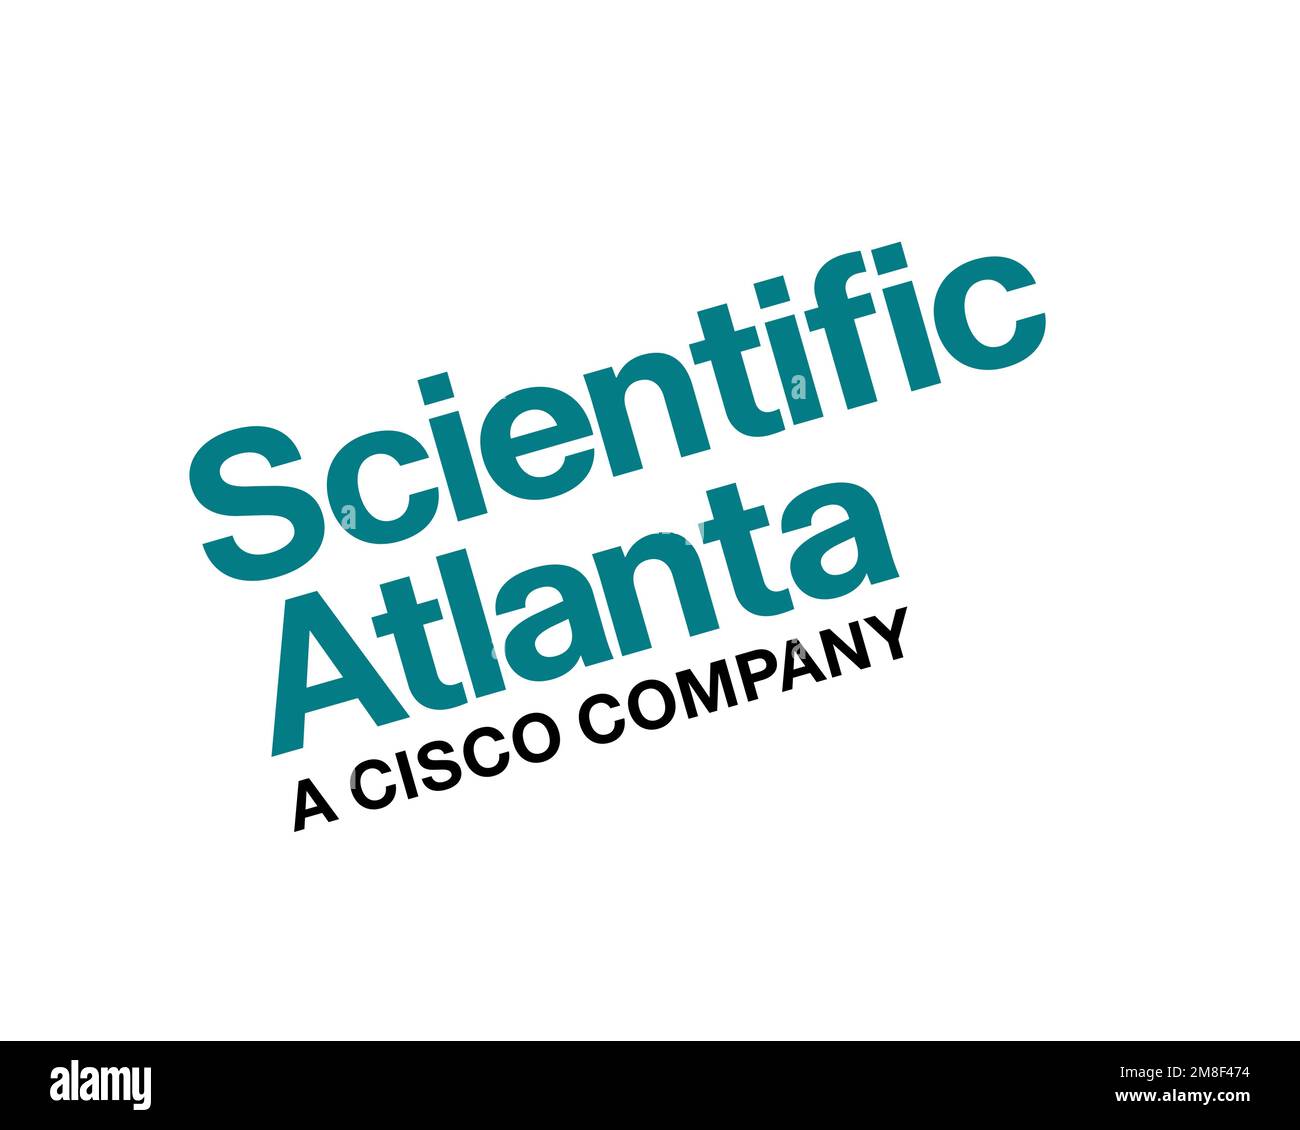 Scientific Atlanta, logo pivoté, fond blanc Banque D'Images